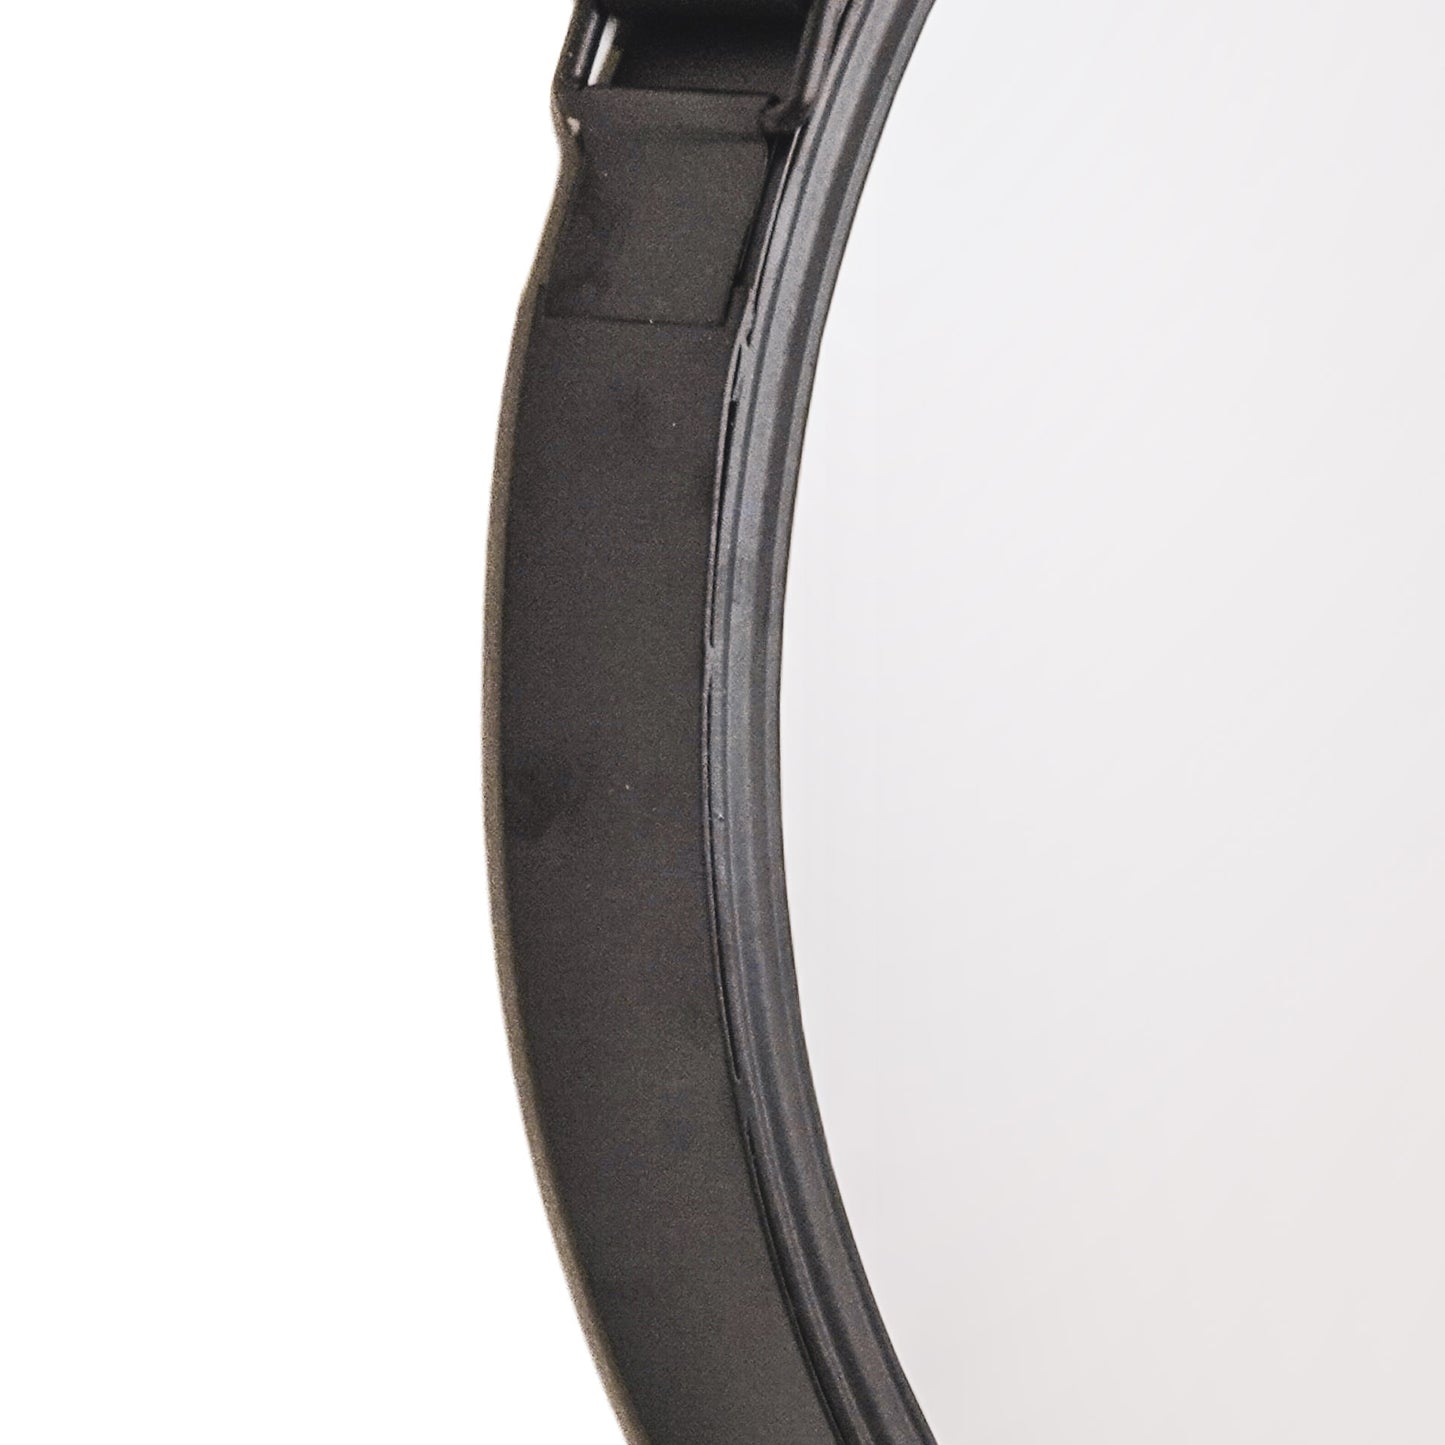 Housevitamin Round Mirror Metal - Black - 30cm